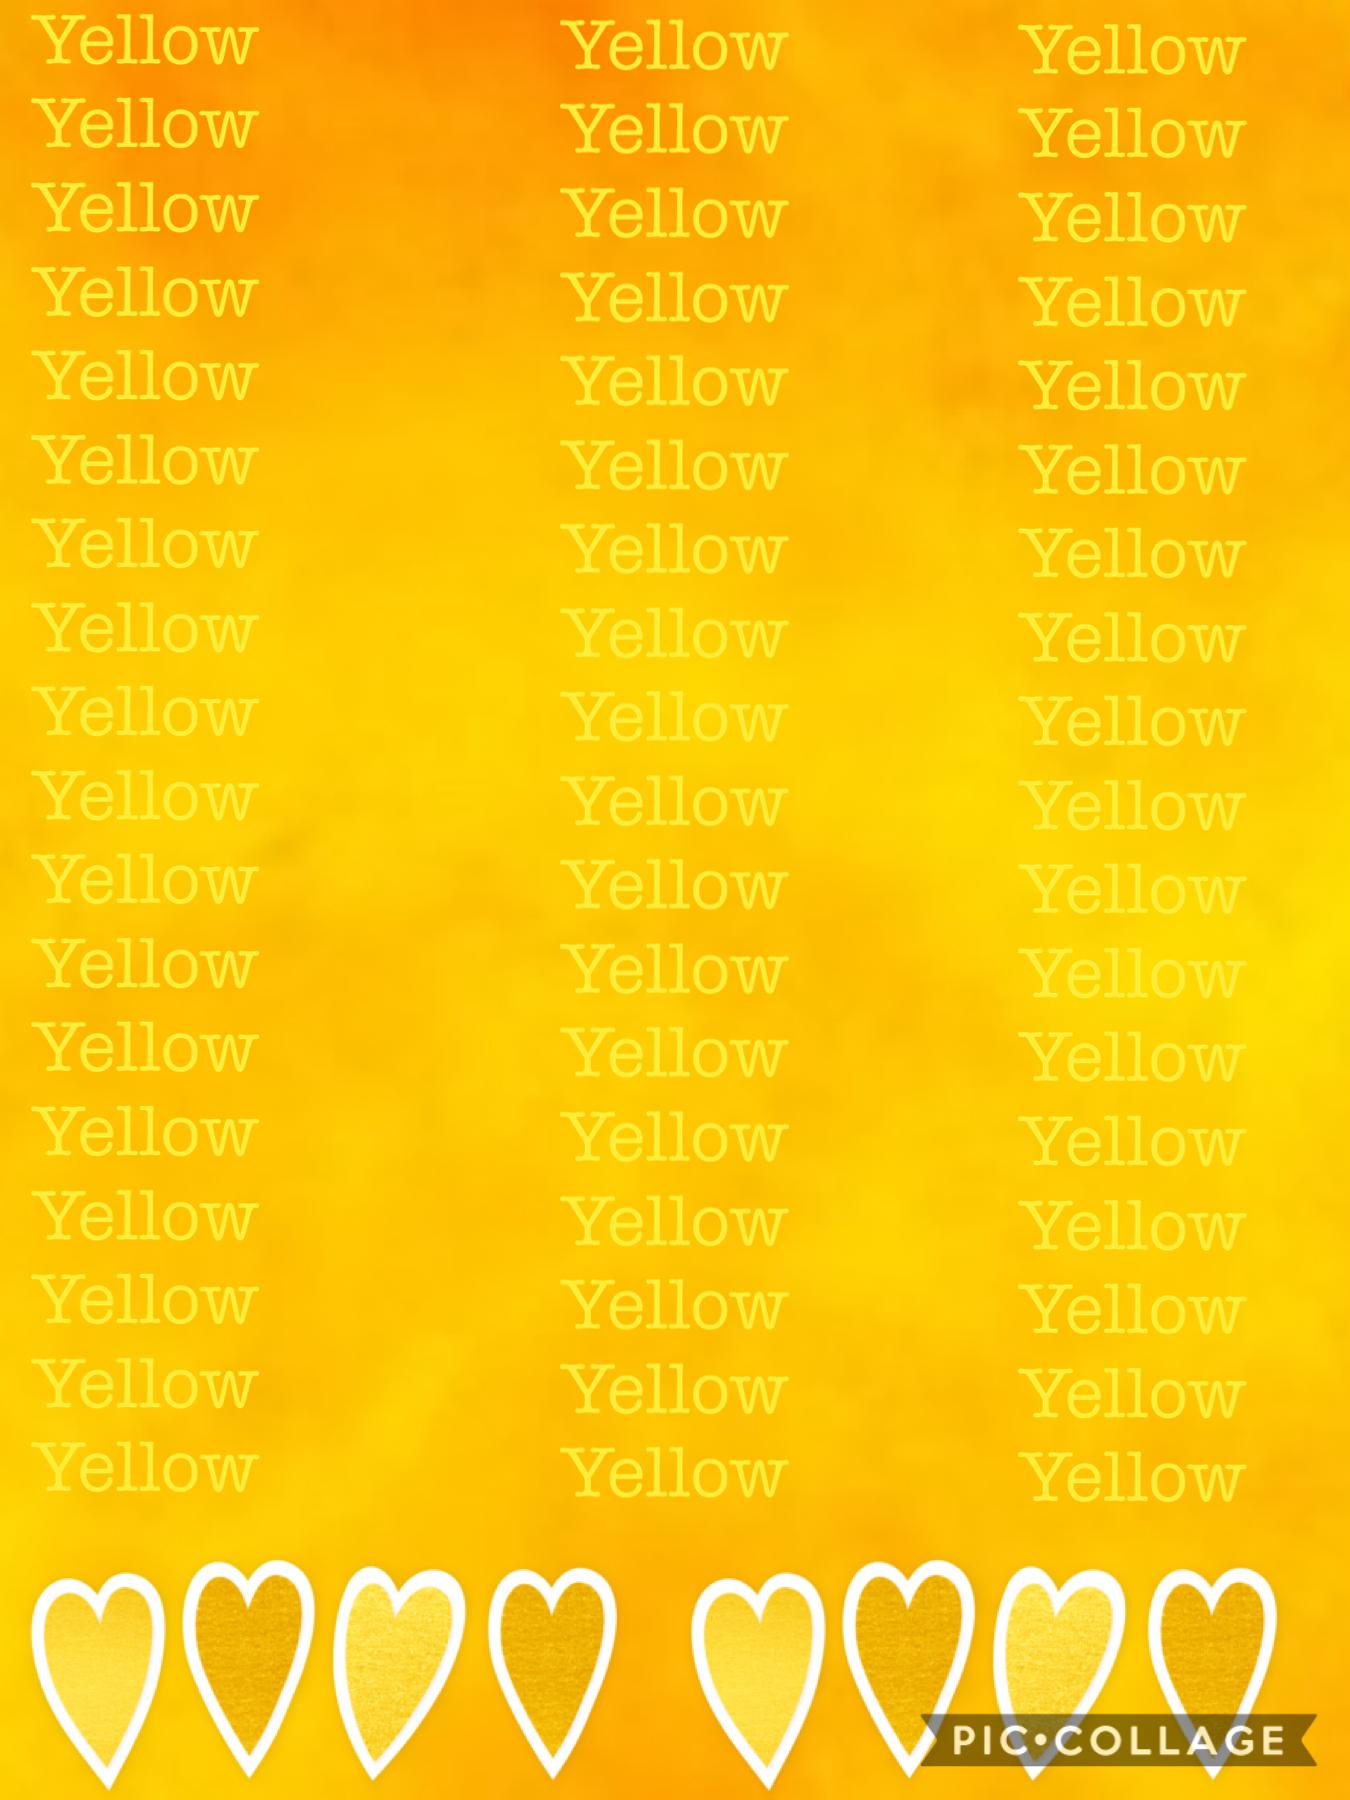 Yellow I love yellow